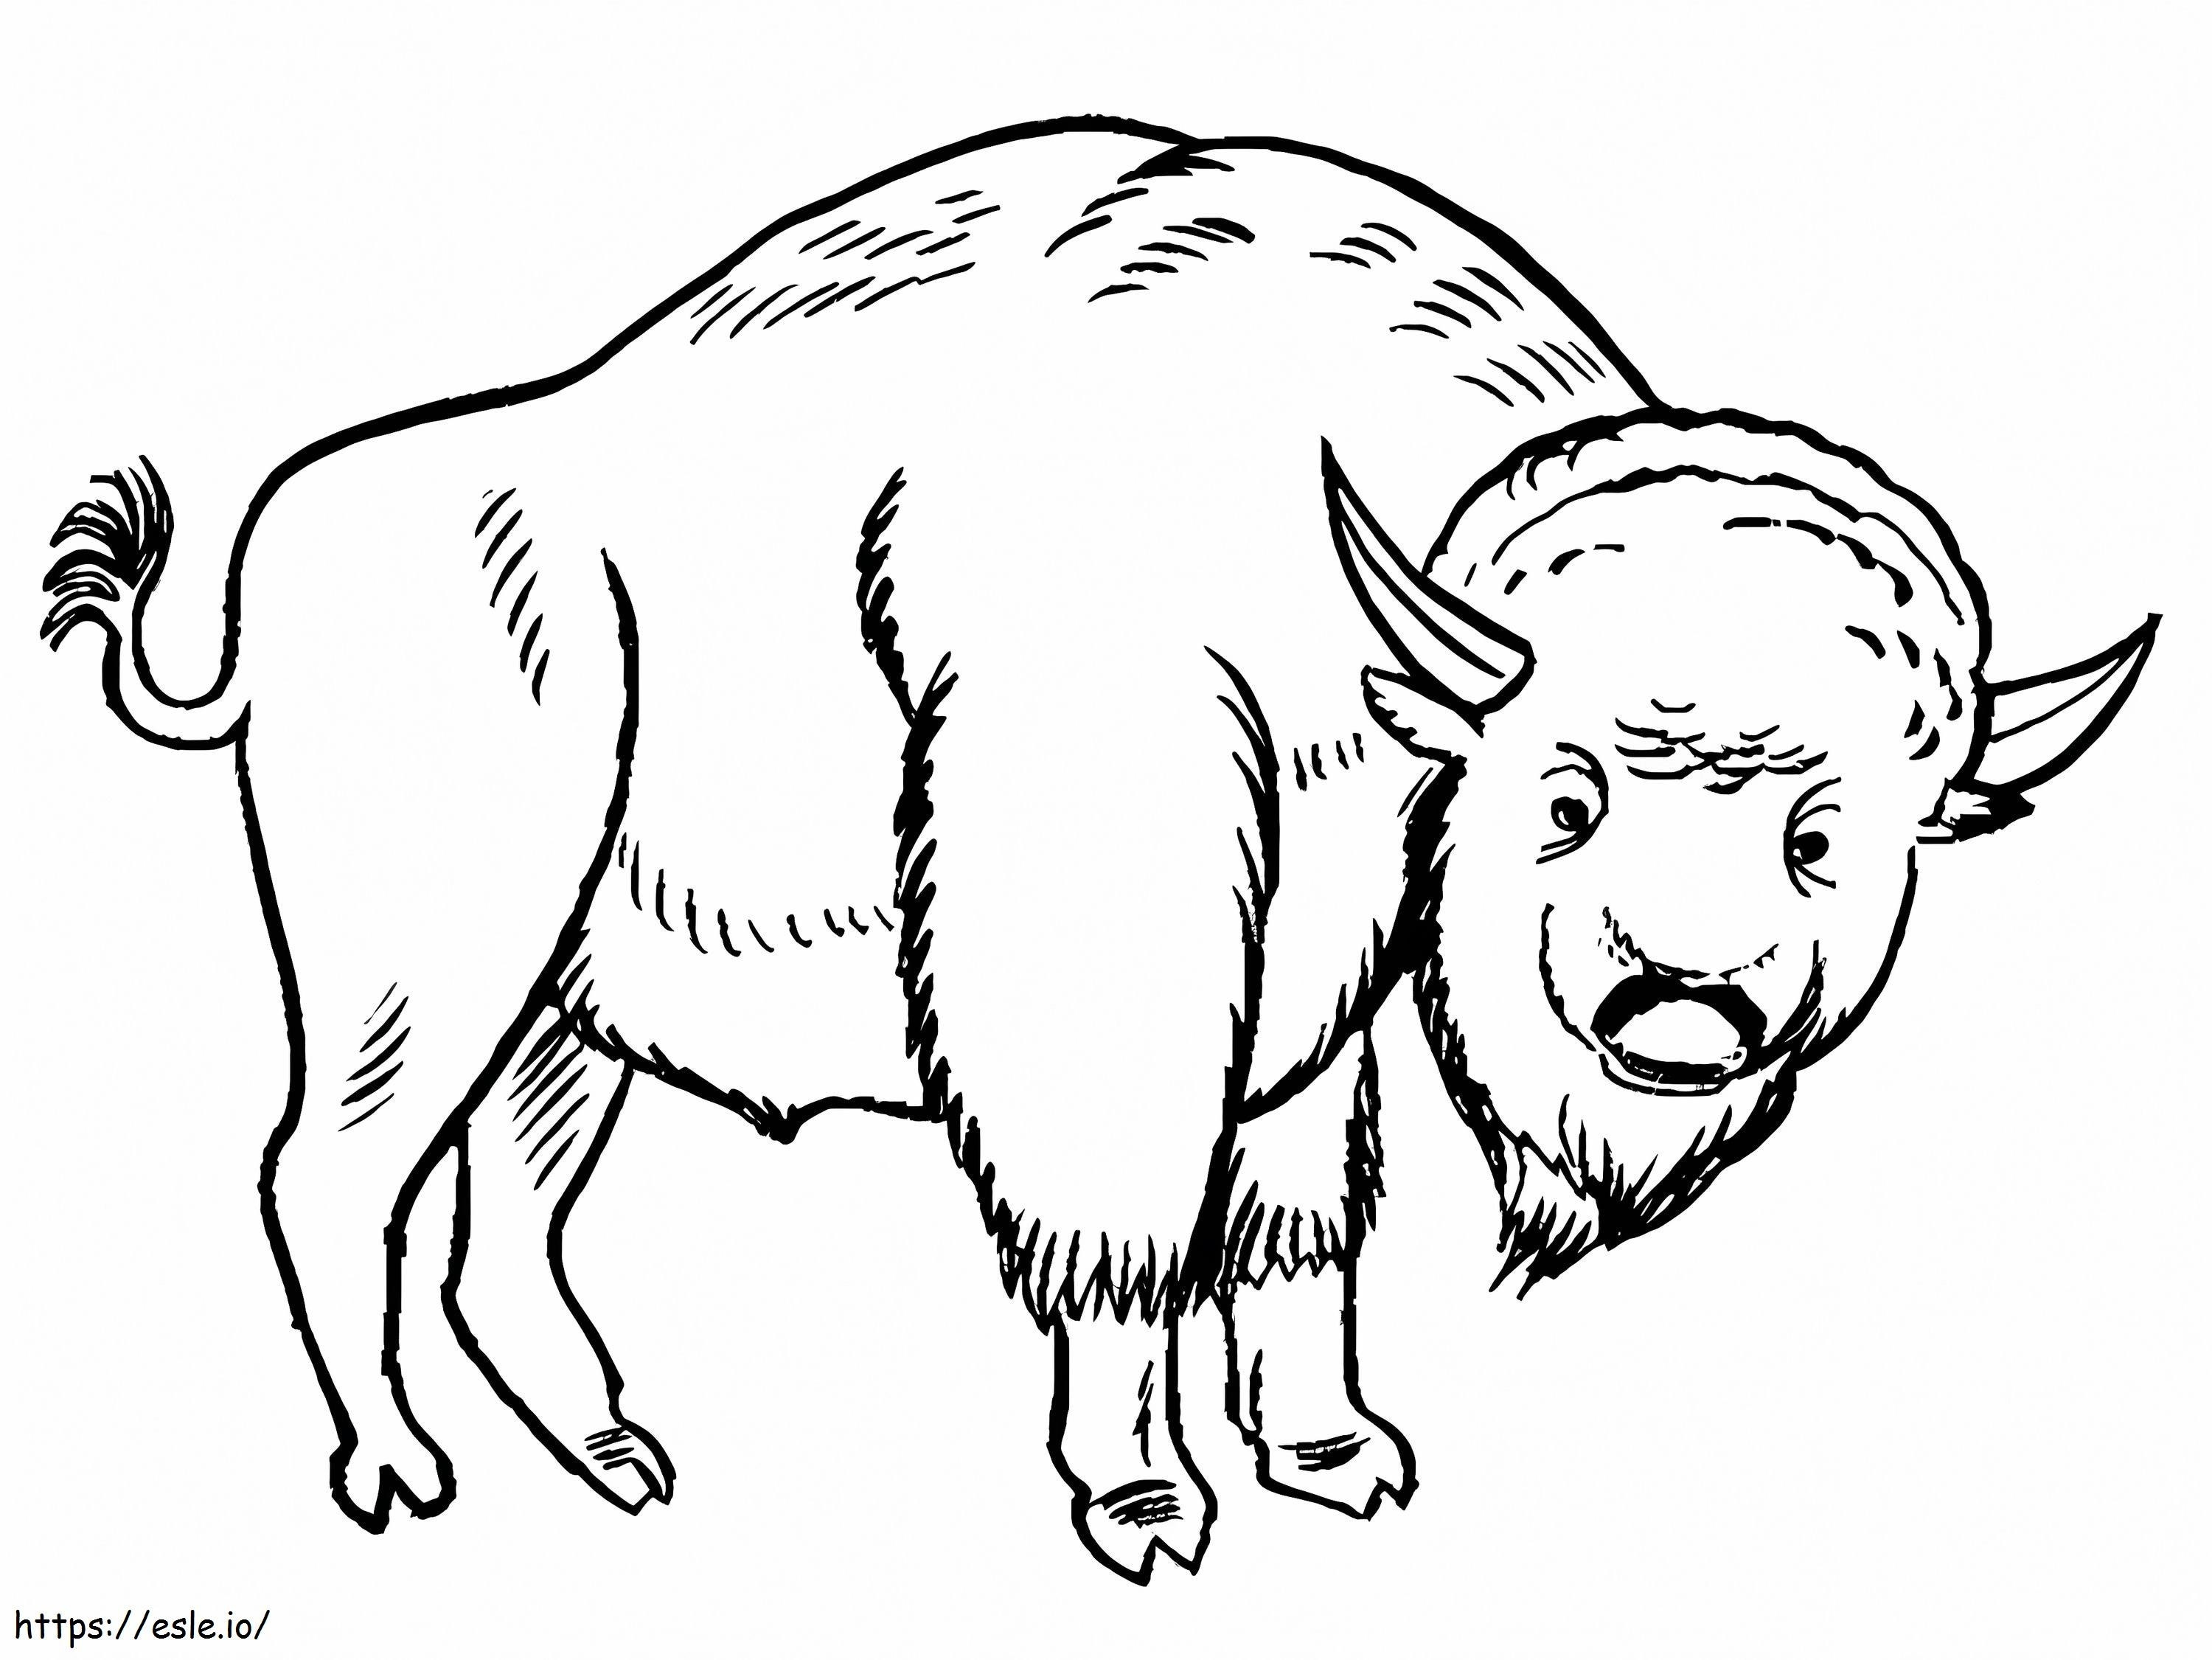 Coloriage Un bison à imprimer dessin